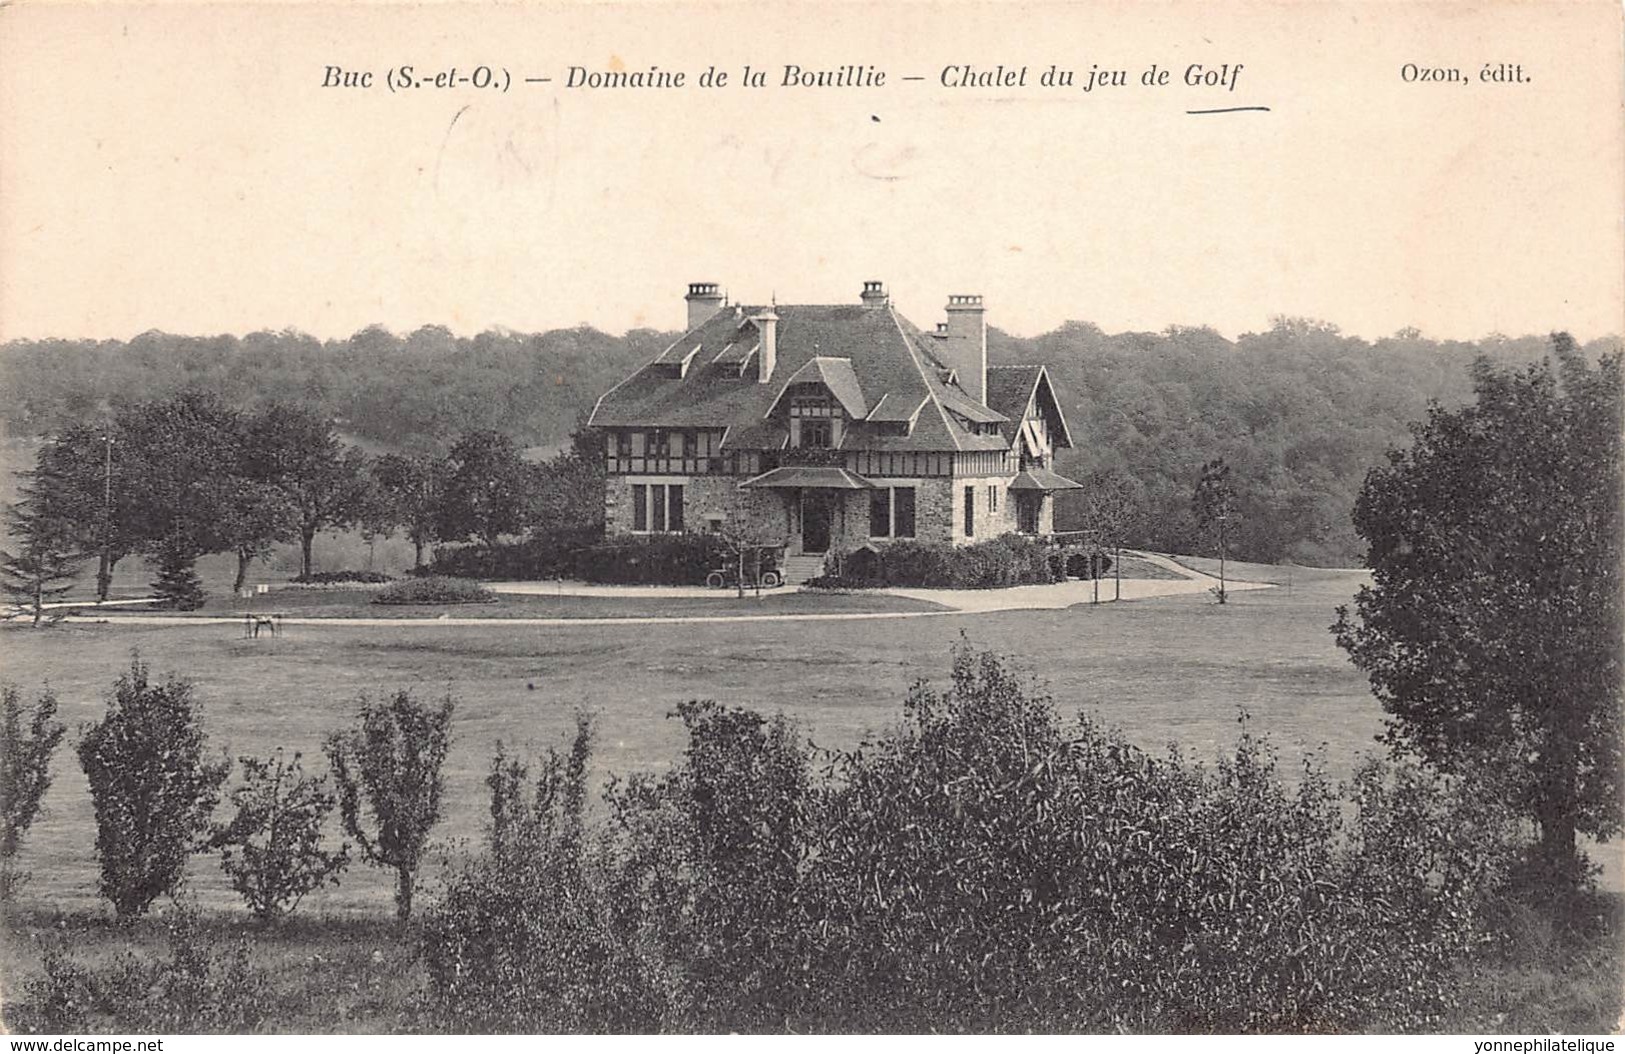 78 - YVELINES - BUC - 10300 - Domaine De La Bouillie - Chalet Du Jeu De Golf - Buc